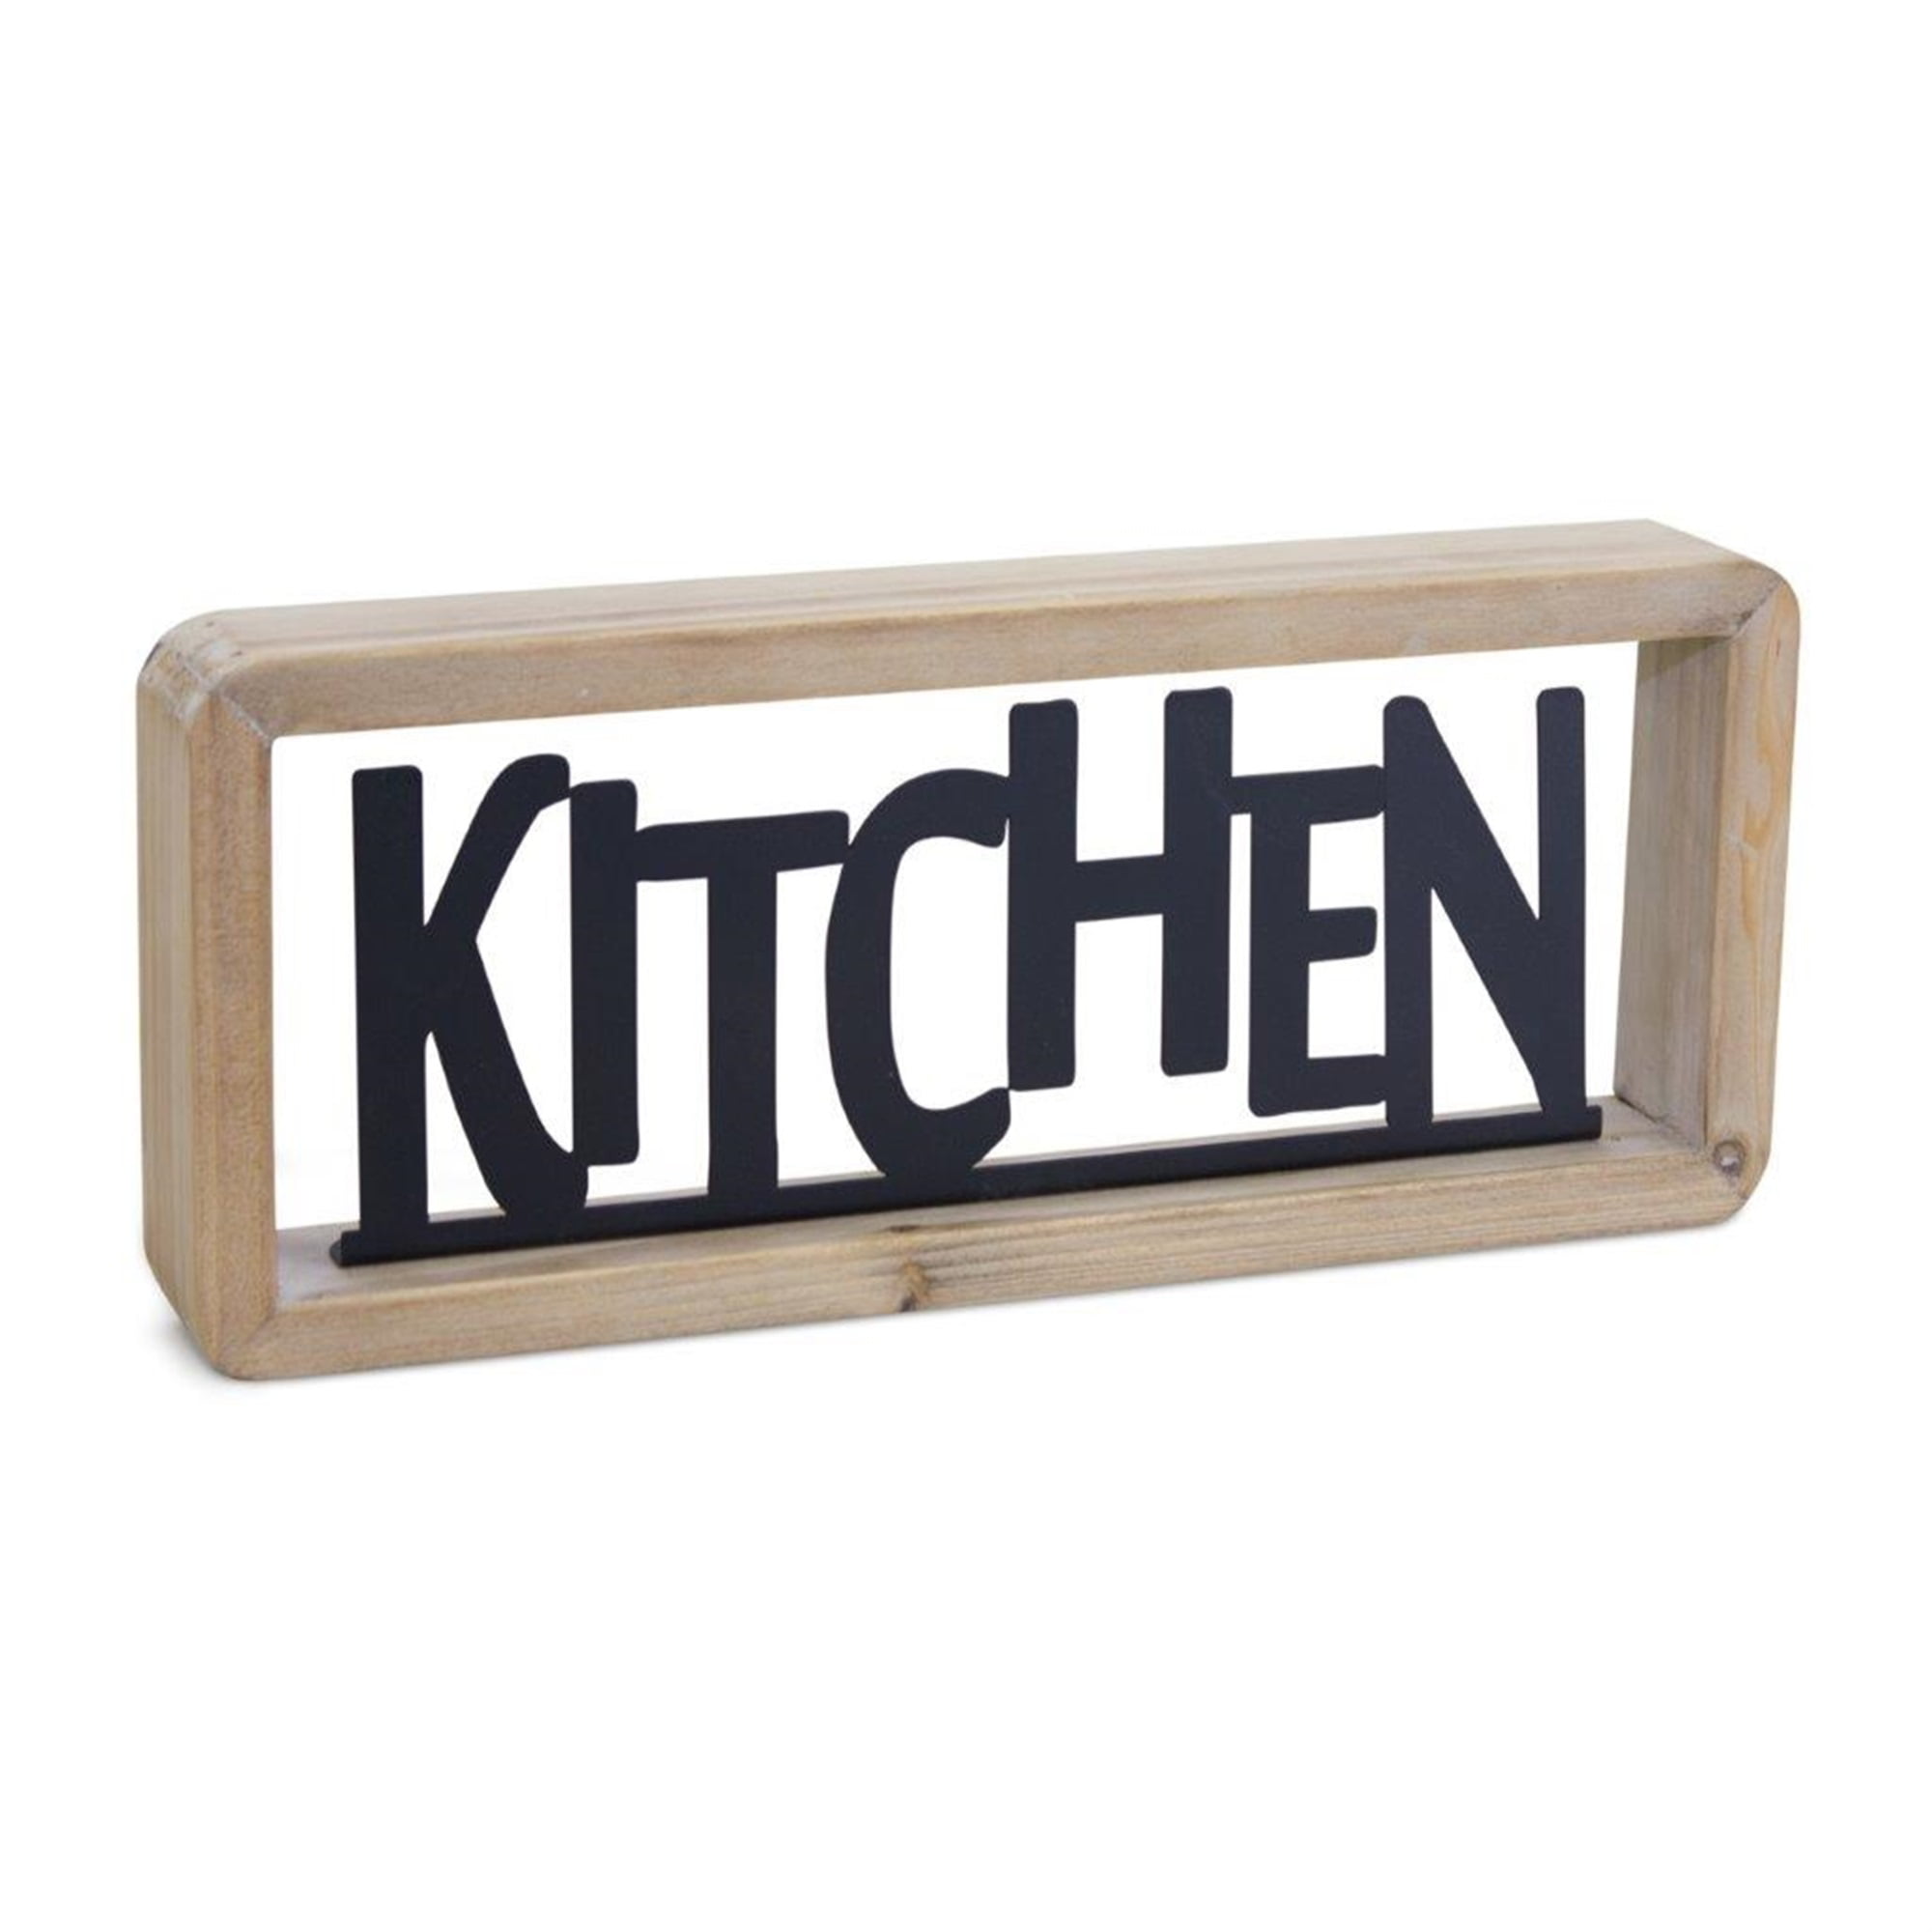 Kitchen Sign 11.75"L x 5"H Wood/Metal